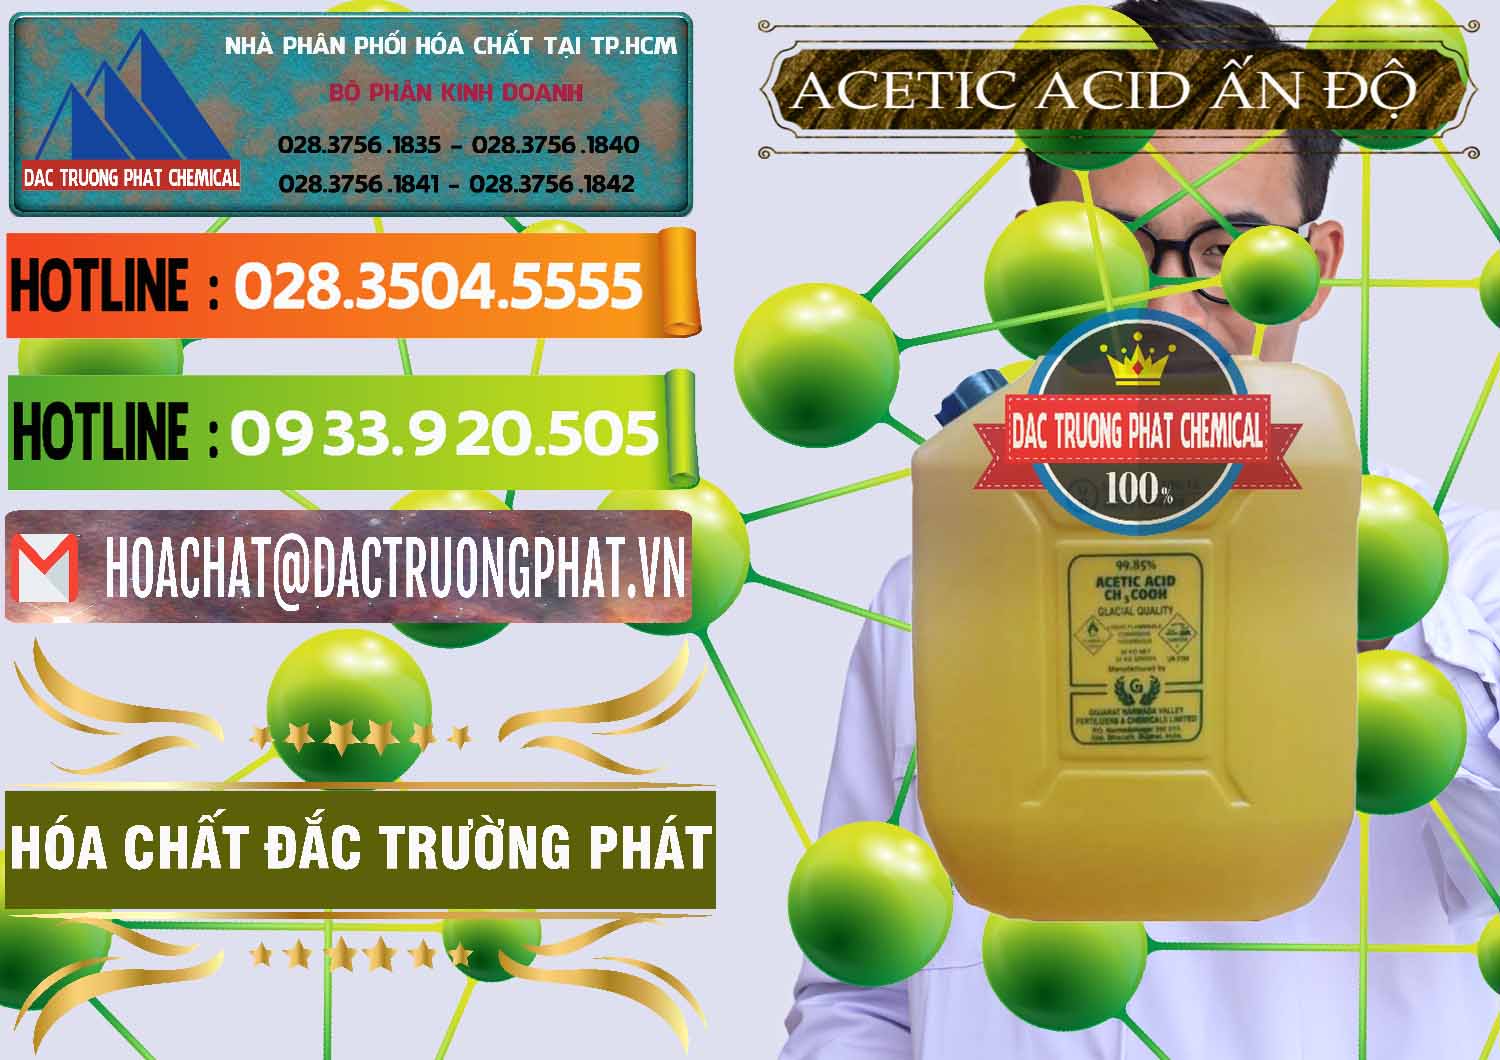 Công ty cung cấp _ bán Acetic Acid – Axit Acetic Ấn Độ India - 0359 - Cty chuyên kinh doanh & cung cấp hóa chất tại TP.HCM - cungcaphoachat.com.vn